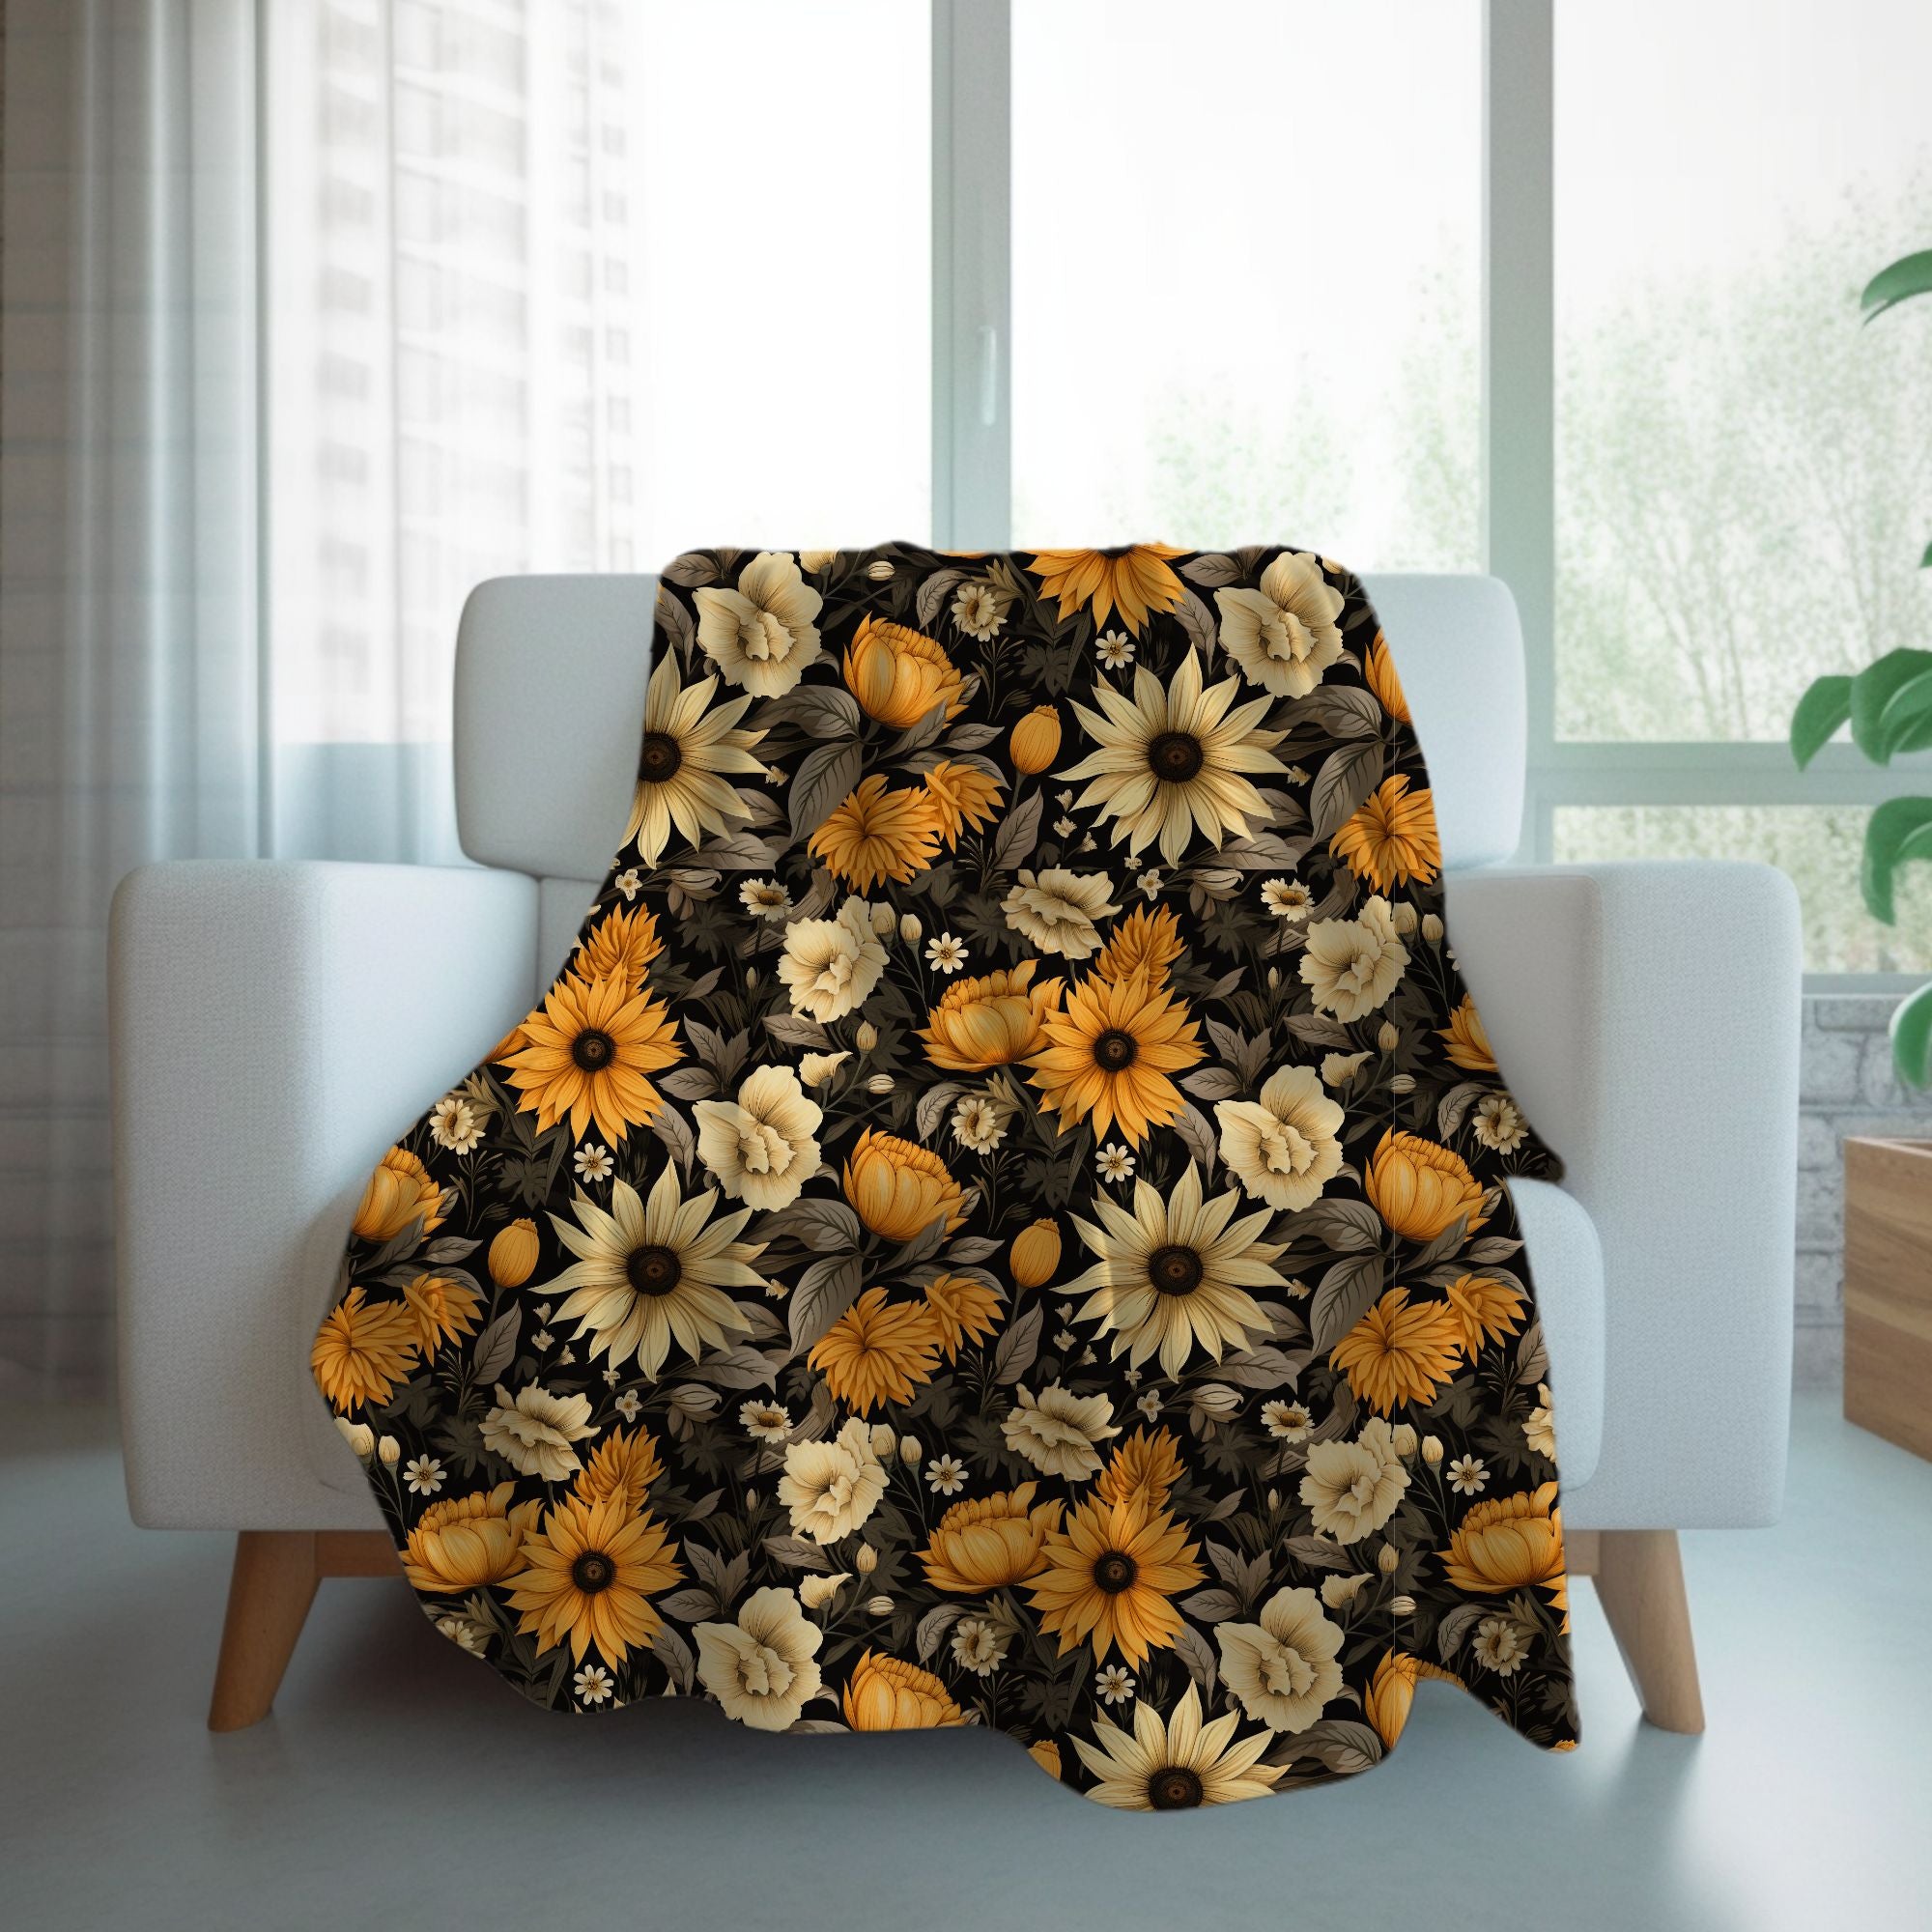 Forbidden Sunflower Blanket in Sherpa or Velveteen Plush